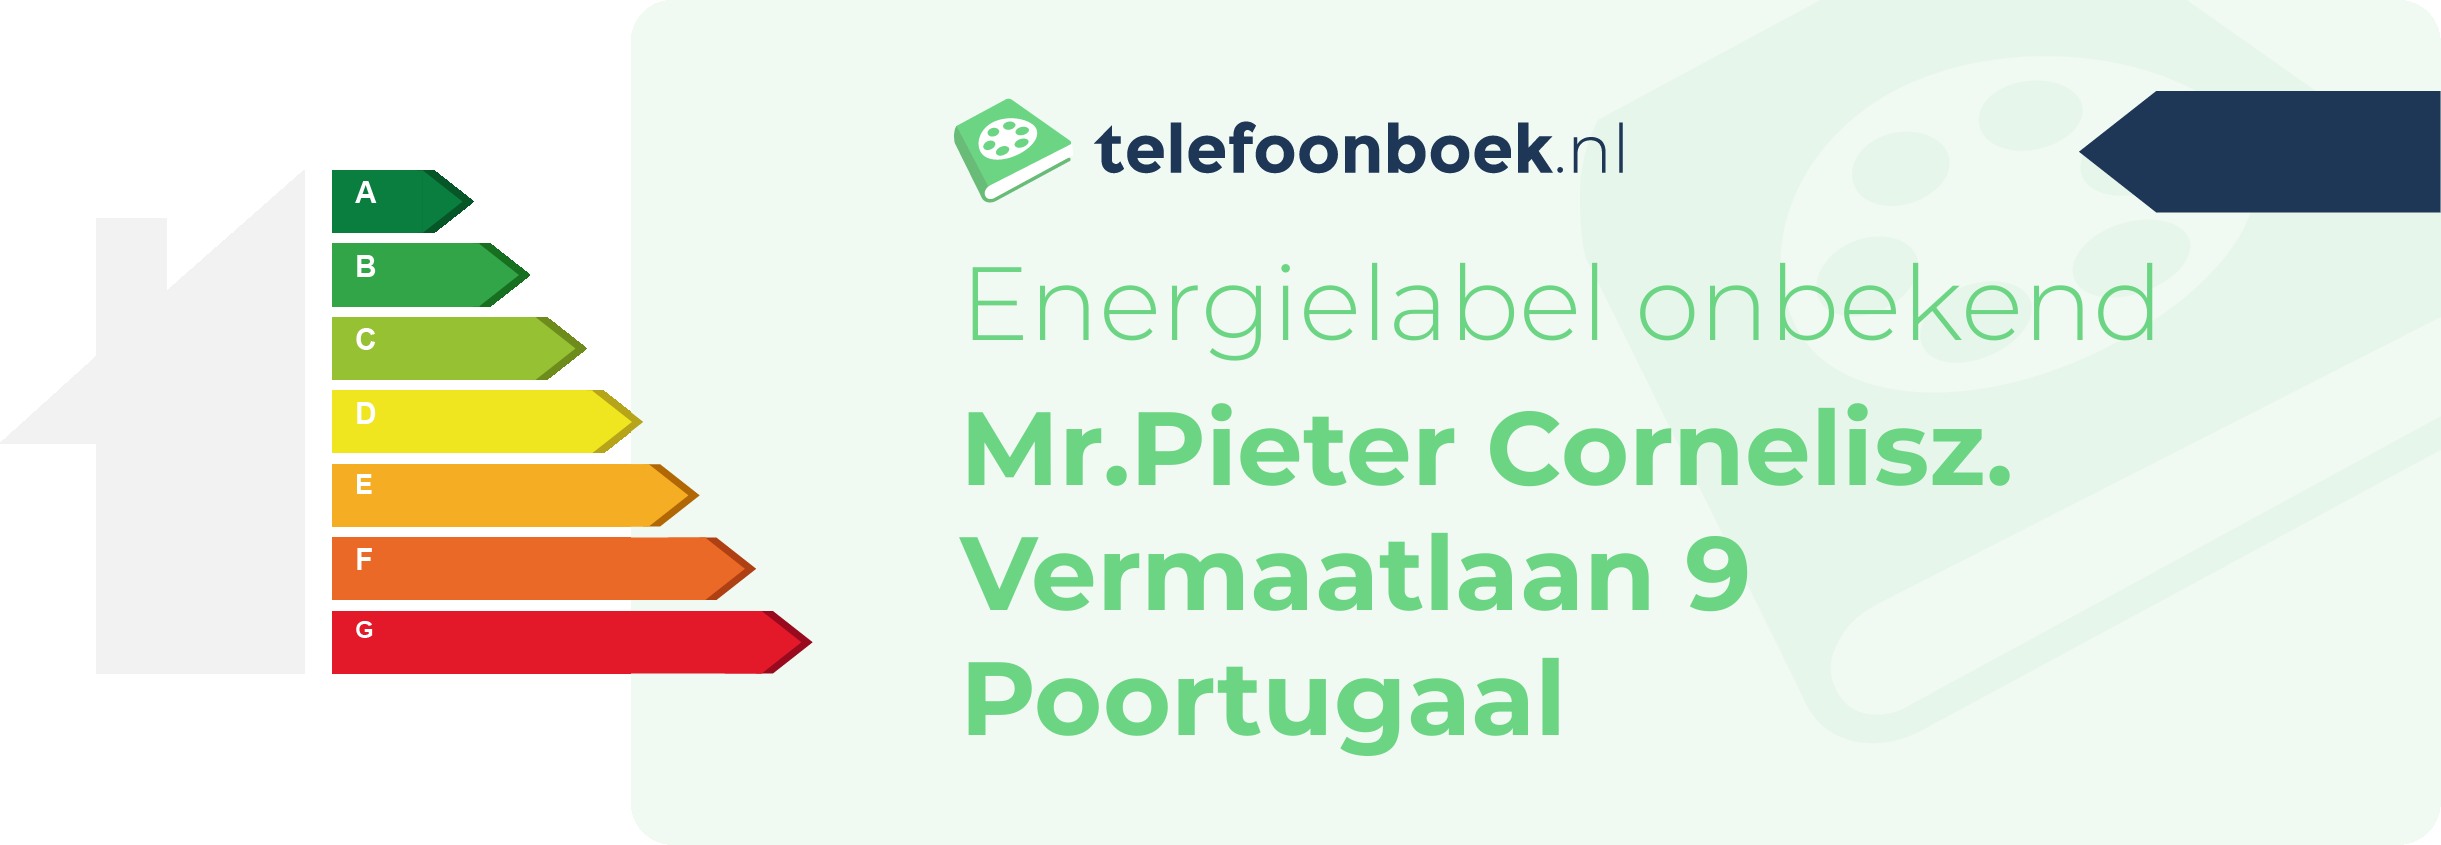 Energielabel Mr.Pieter Cornelisz. Vermaatlaan 9 Poortugaal